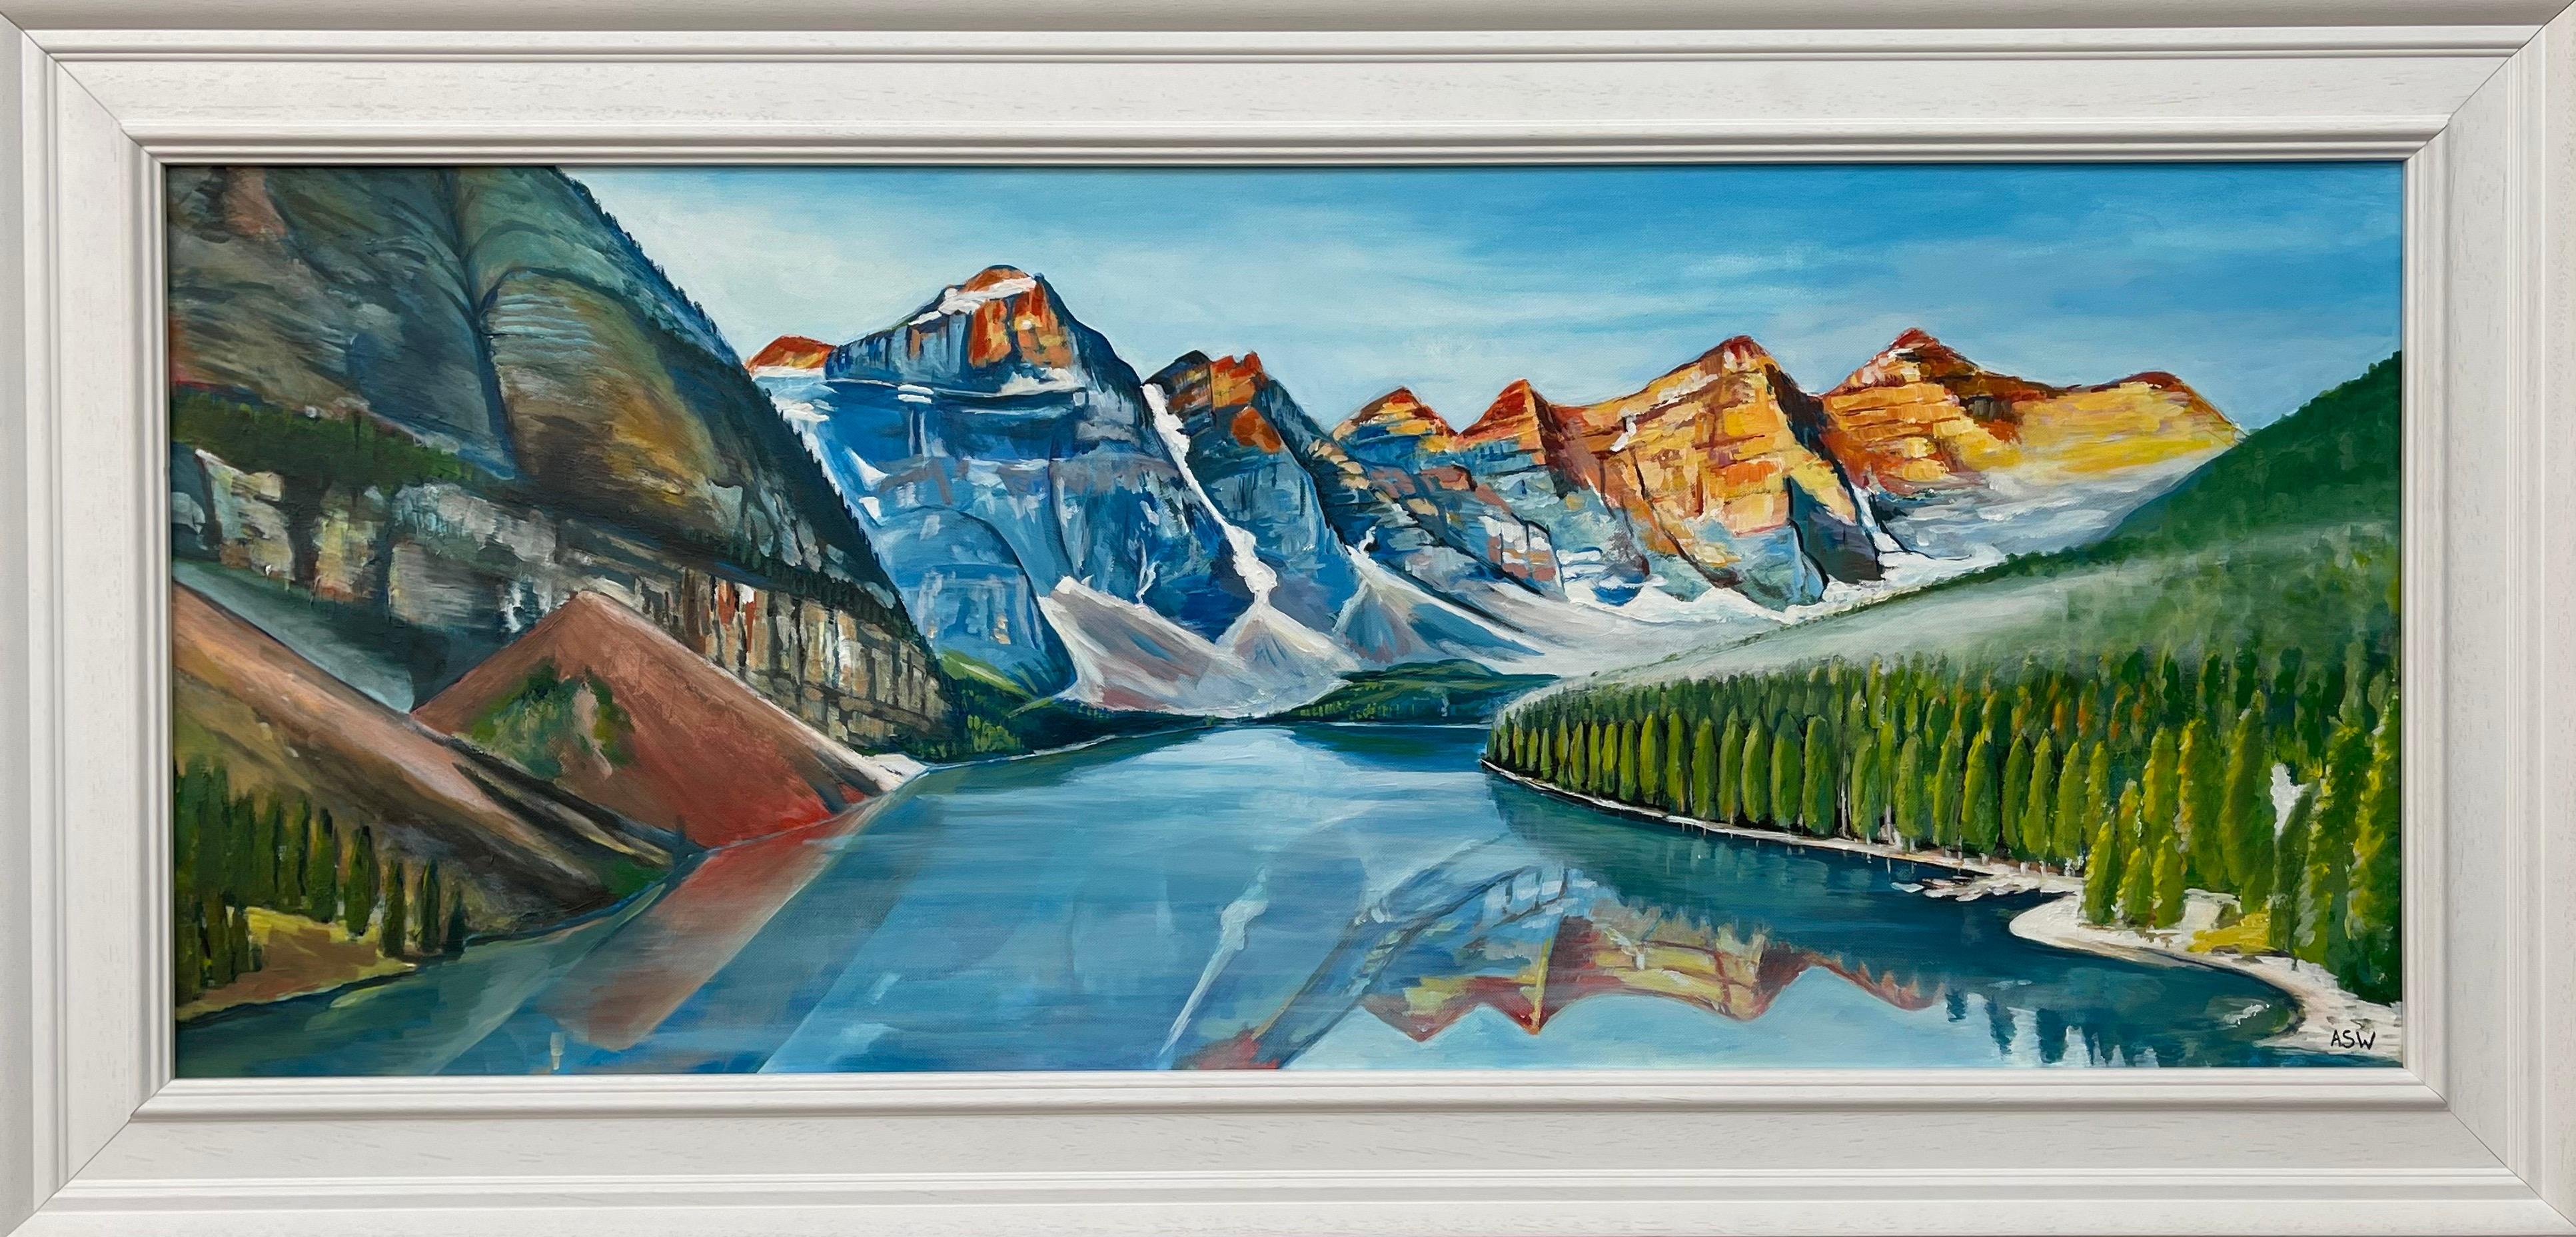 Angela Wakefield Abstract Painting – Modernes Landschaftsgemälde des Alberta-Sees in Kanada des zeitgenössischen Künstlers